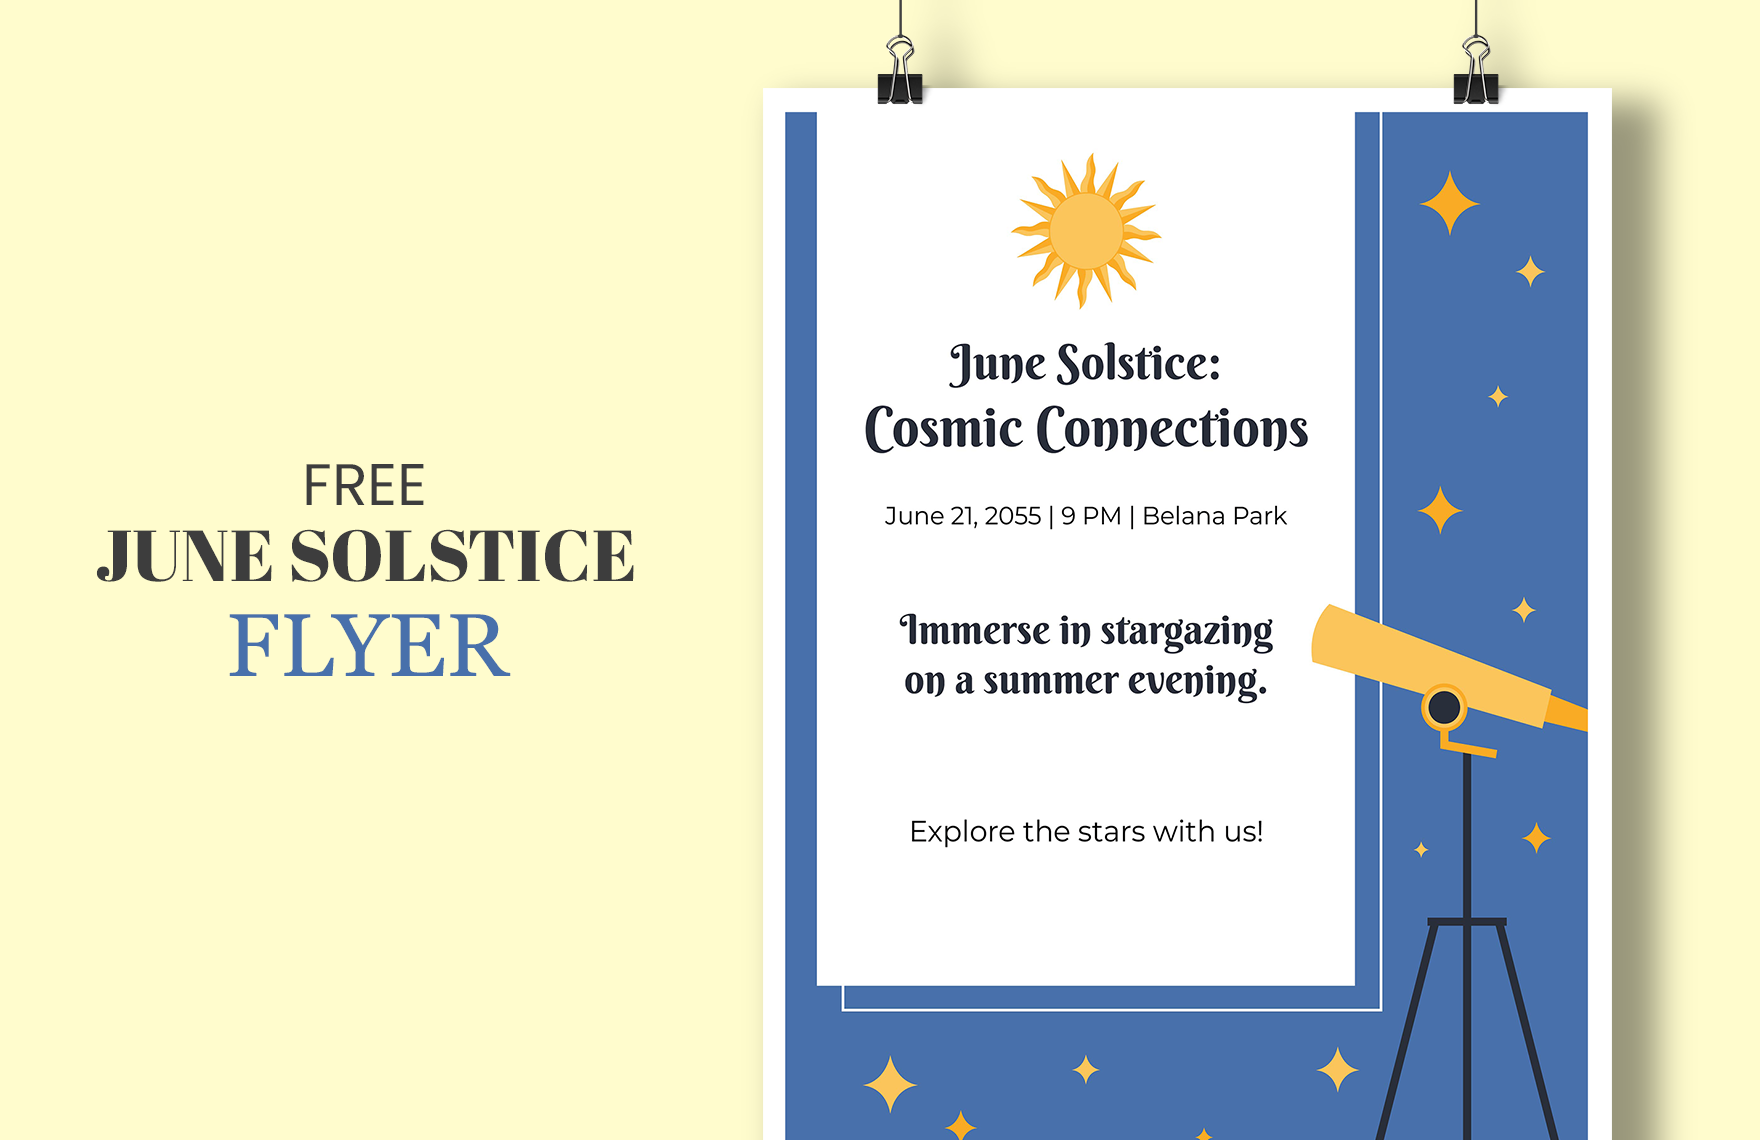 June Solstice Flyer 